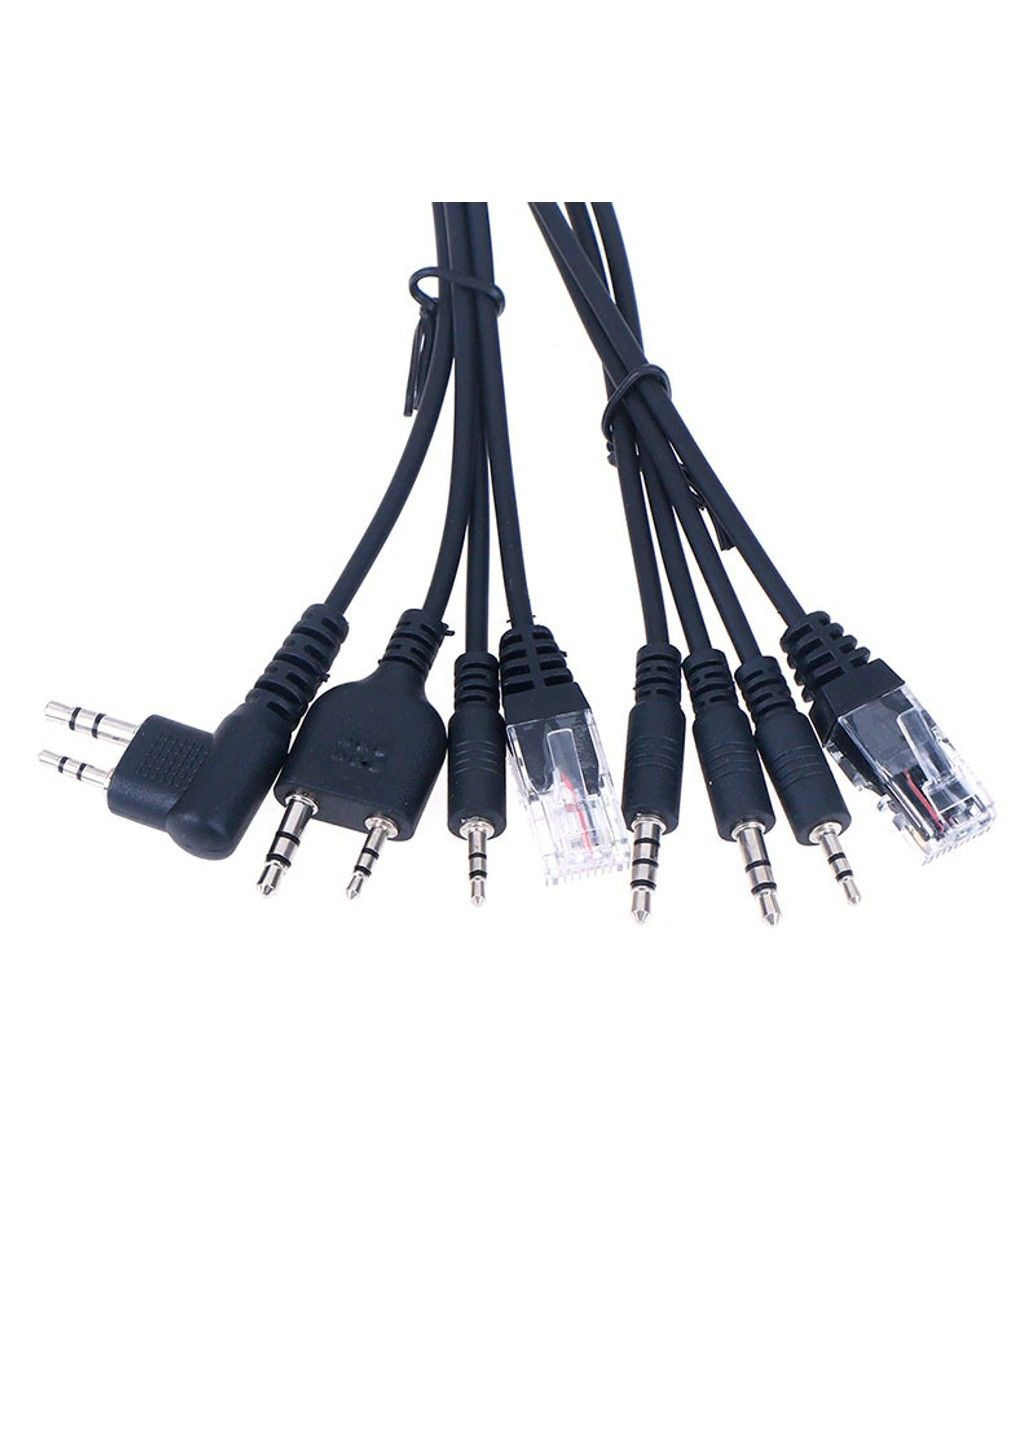 Универсальный кабель RETEVIS PROFI MAX 8in1 для программирования раций, Motorola и многих других Baofeng (292312852)